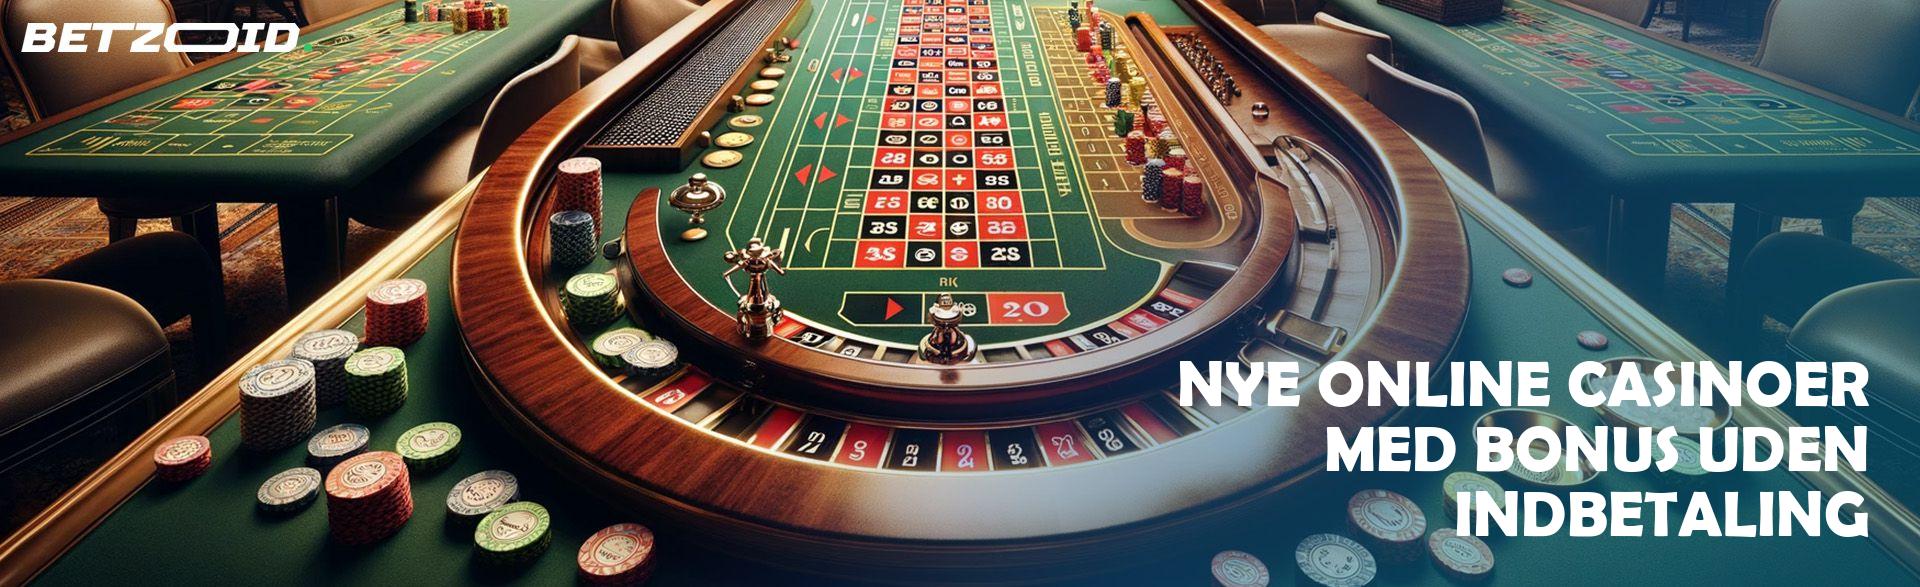 Nye Online Casinoer med Bonus uden Indbetaling.